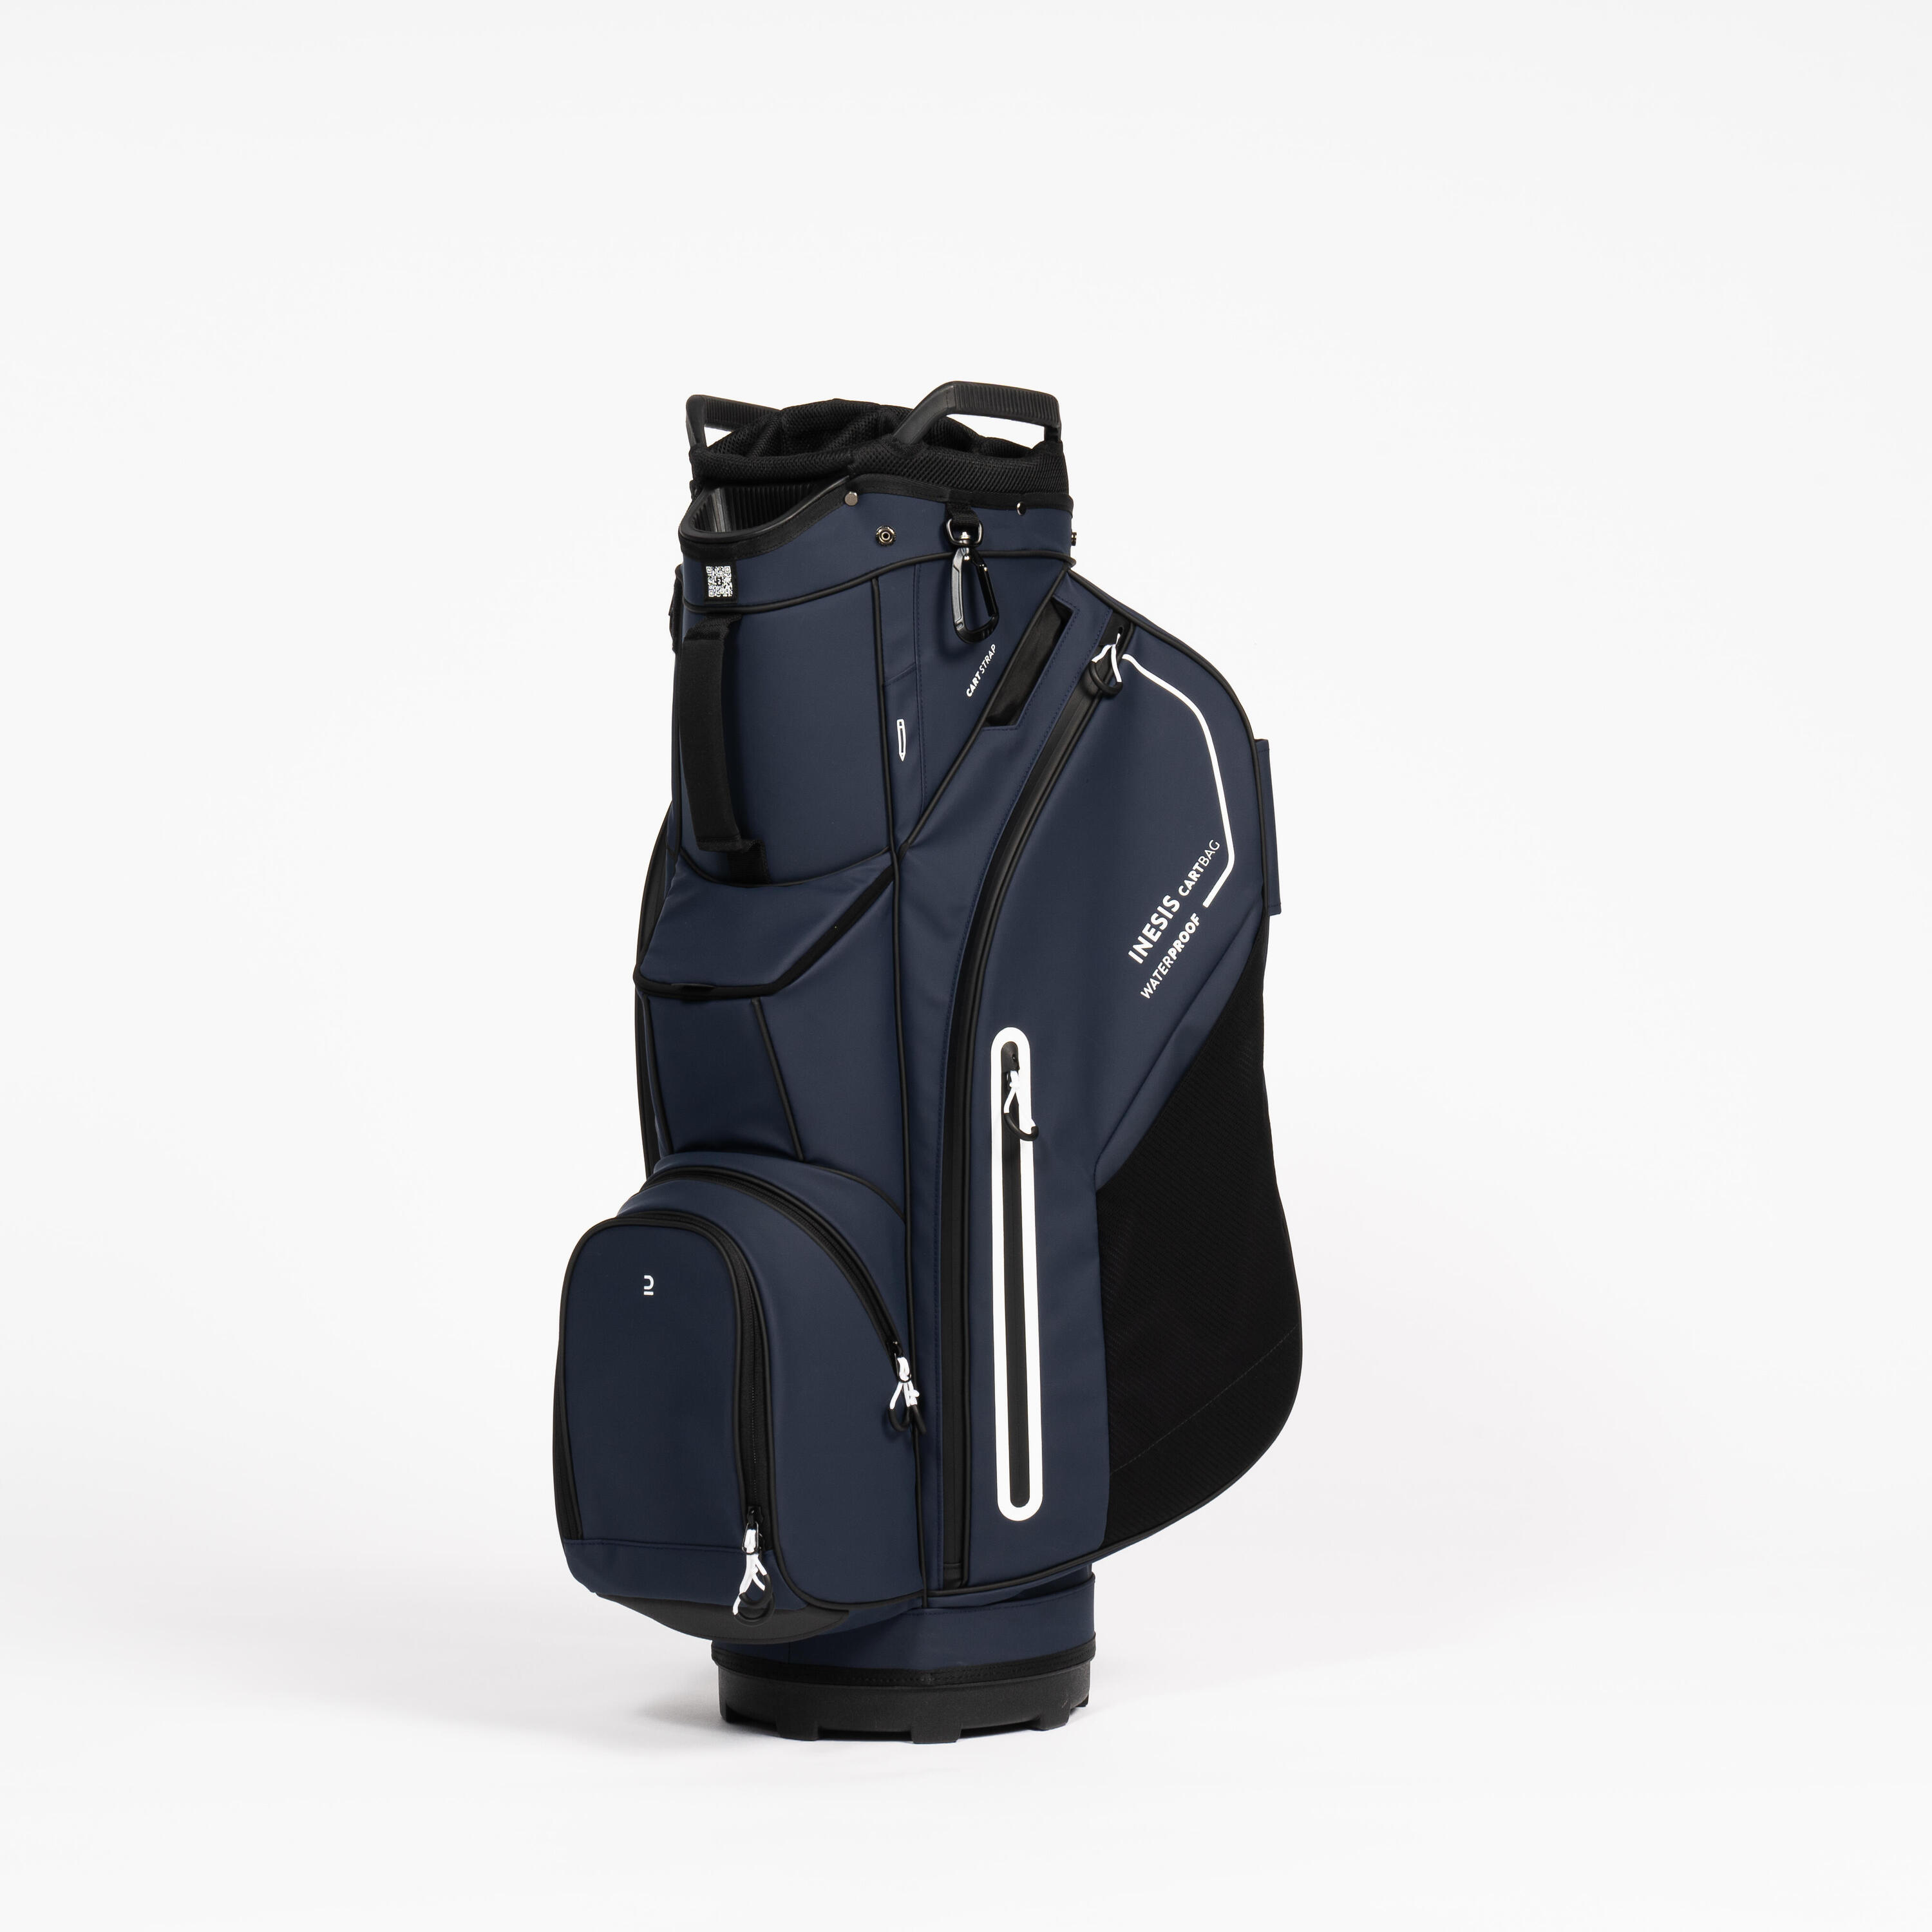 INESIS Golf trolley bag waterproof – INESIS Cart blue